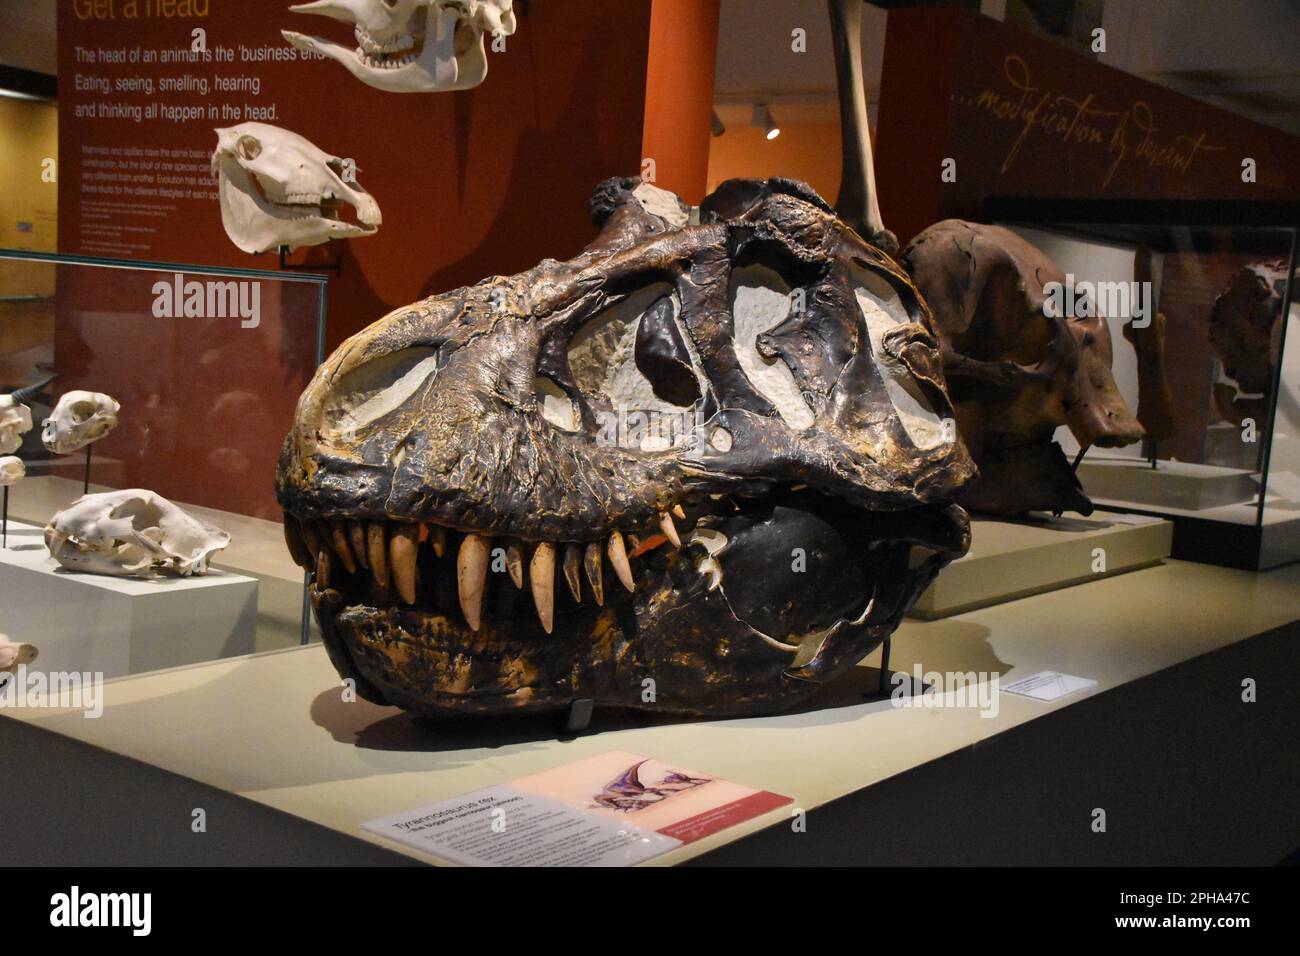 Calavera de tiranosaurio rex fosil. Stock Photo